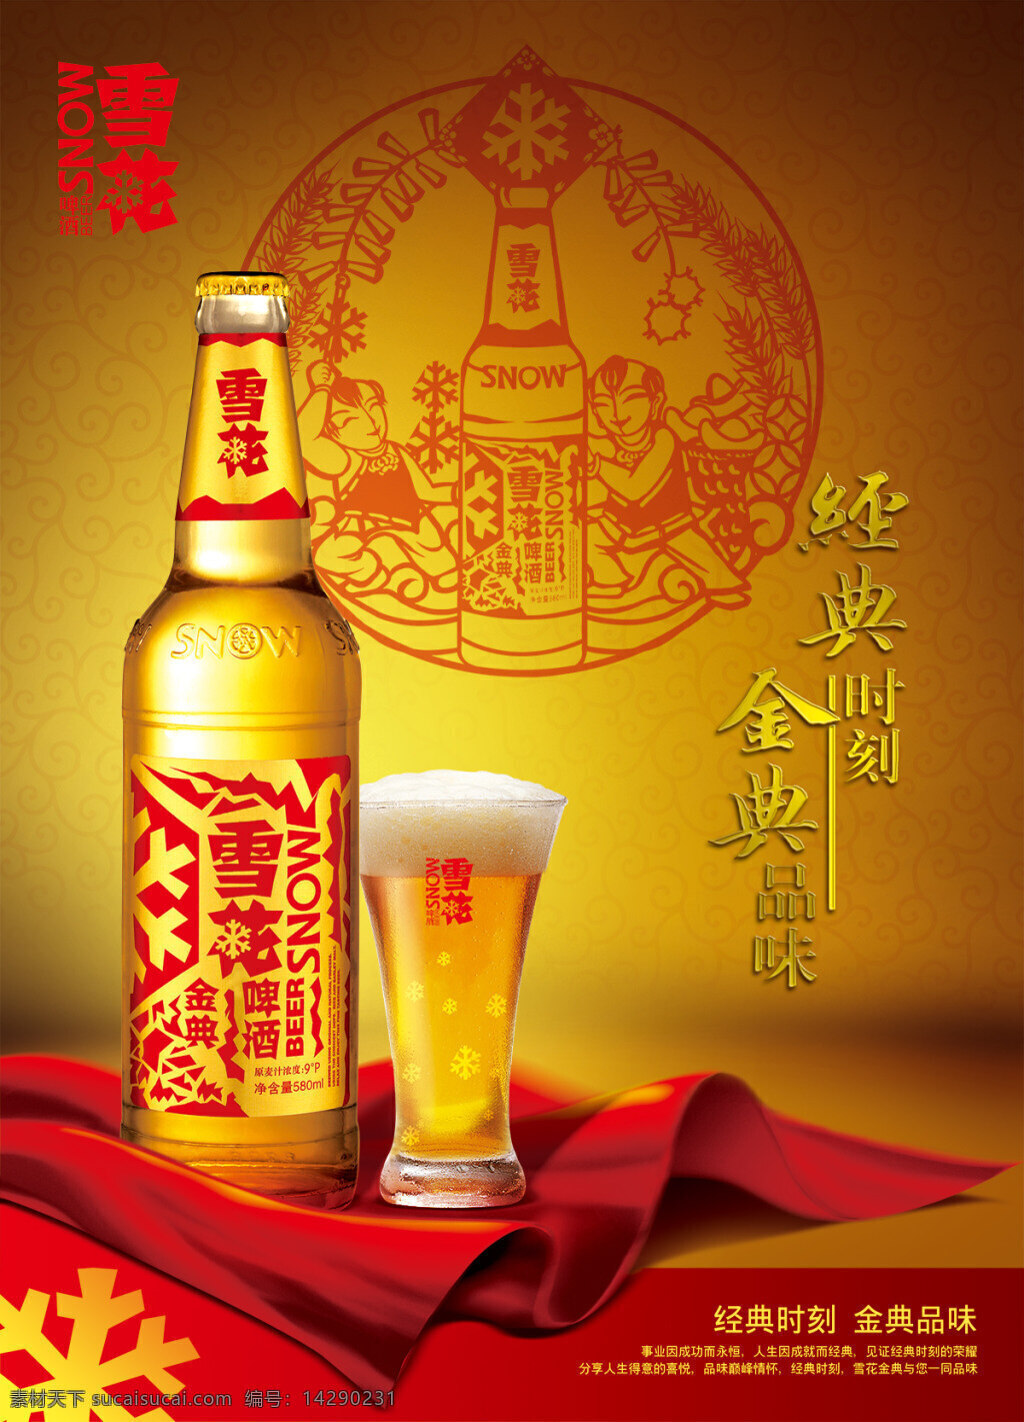 经典 时刻 金典 品质 雪花 啤酒 广告 中国风 雪花啤酒 雪 茶 中国风海报 剪纸 啤酒宣传海报 啤酒节 宣传海报 psd素材 红色